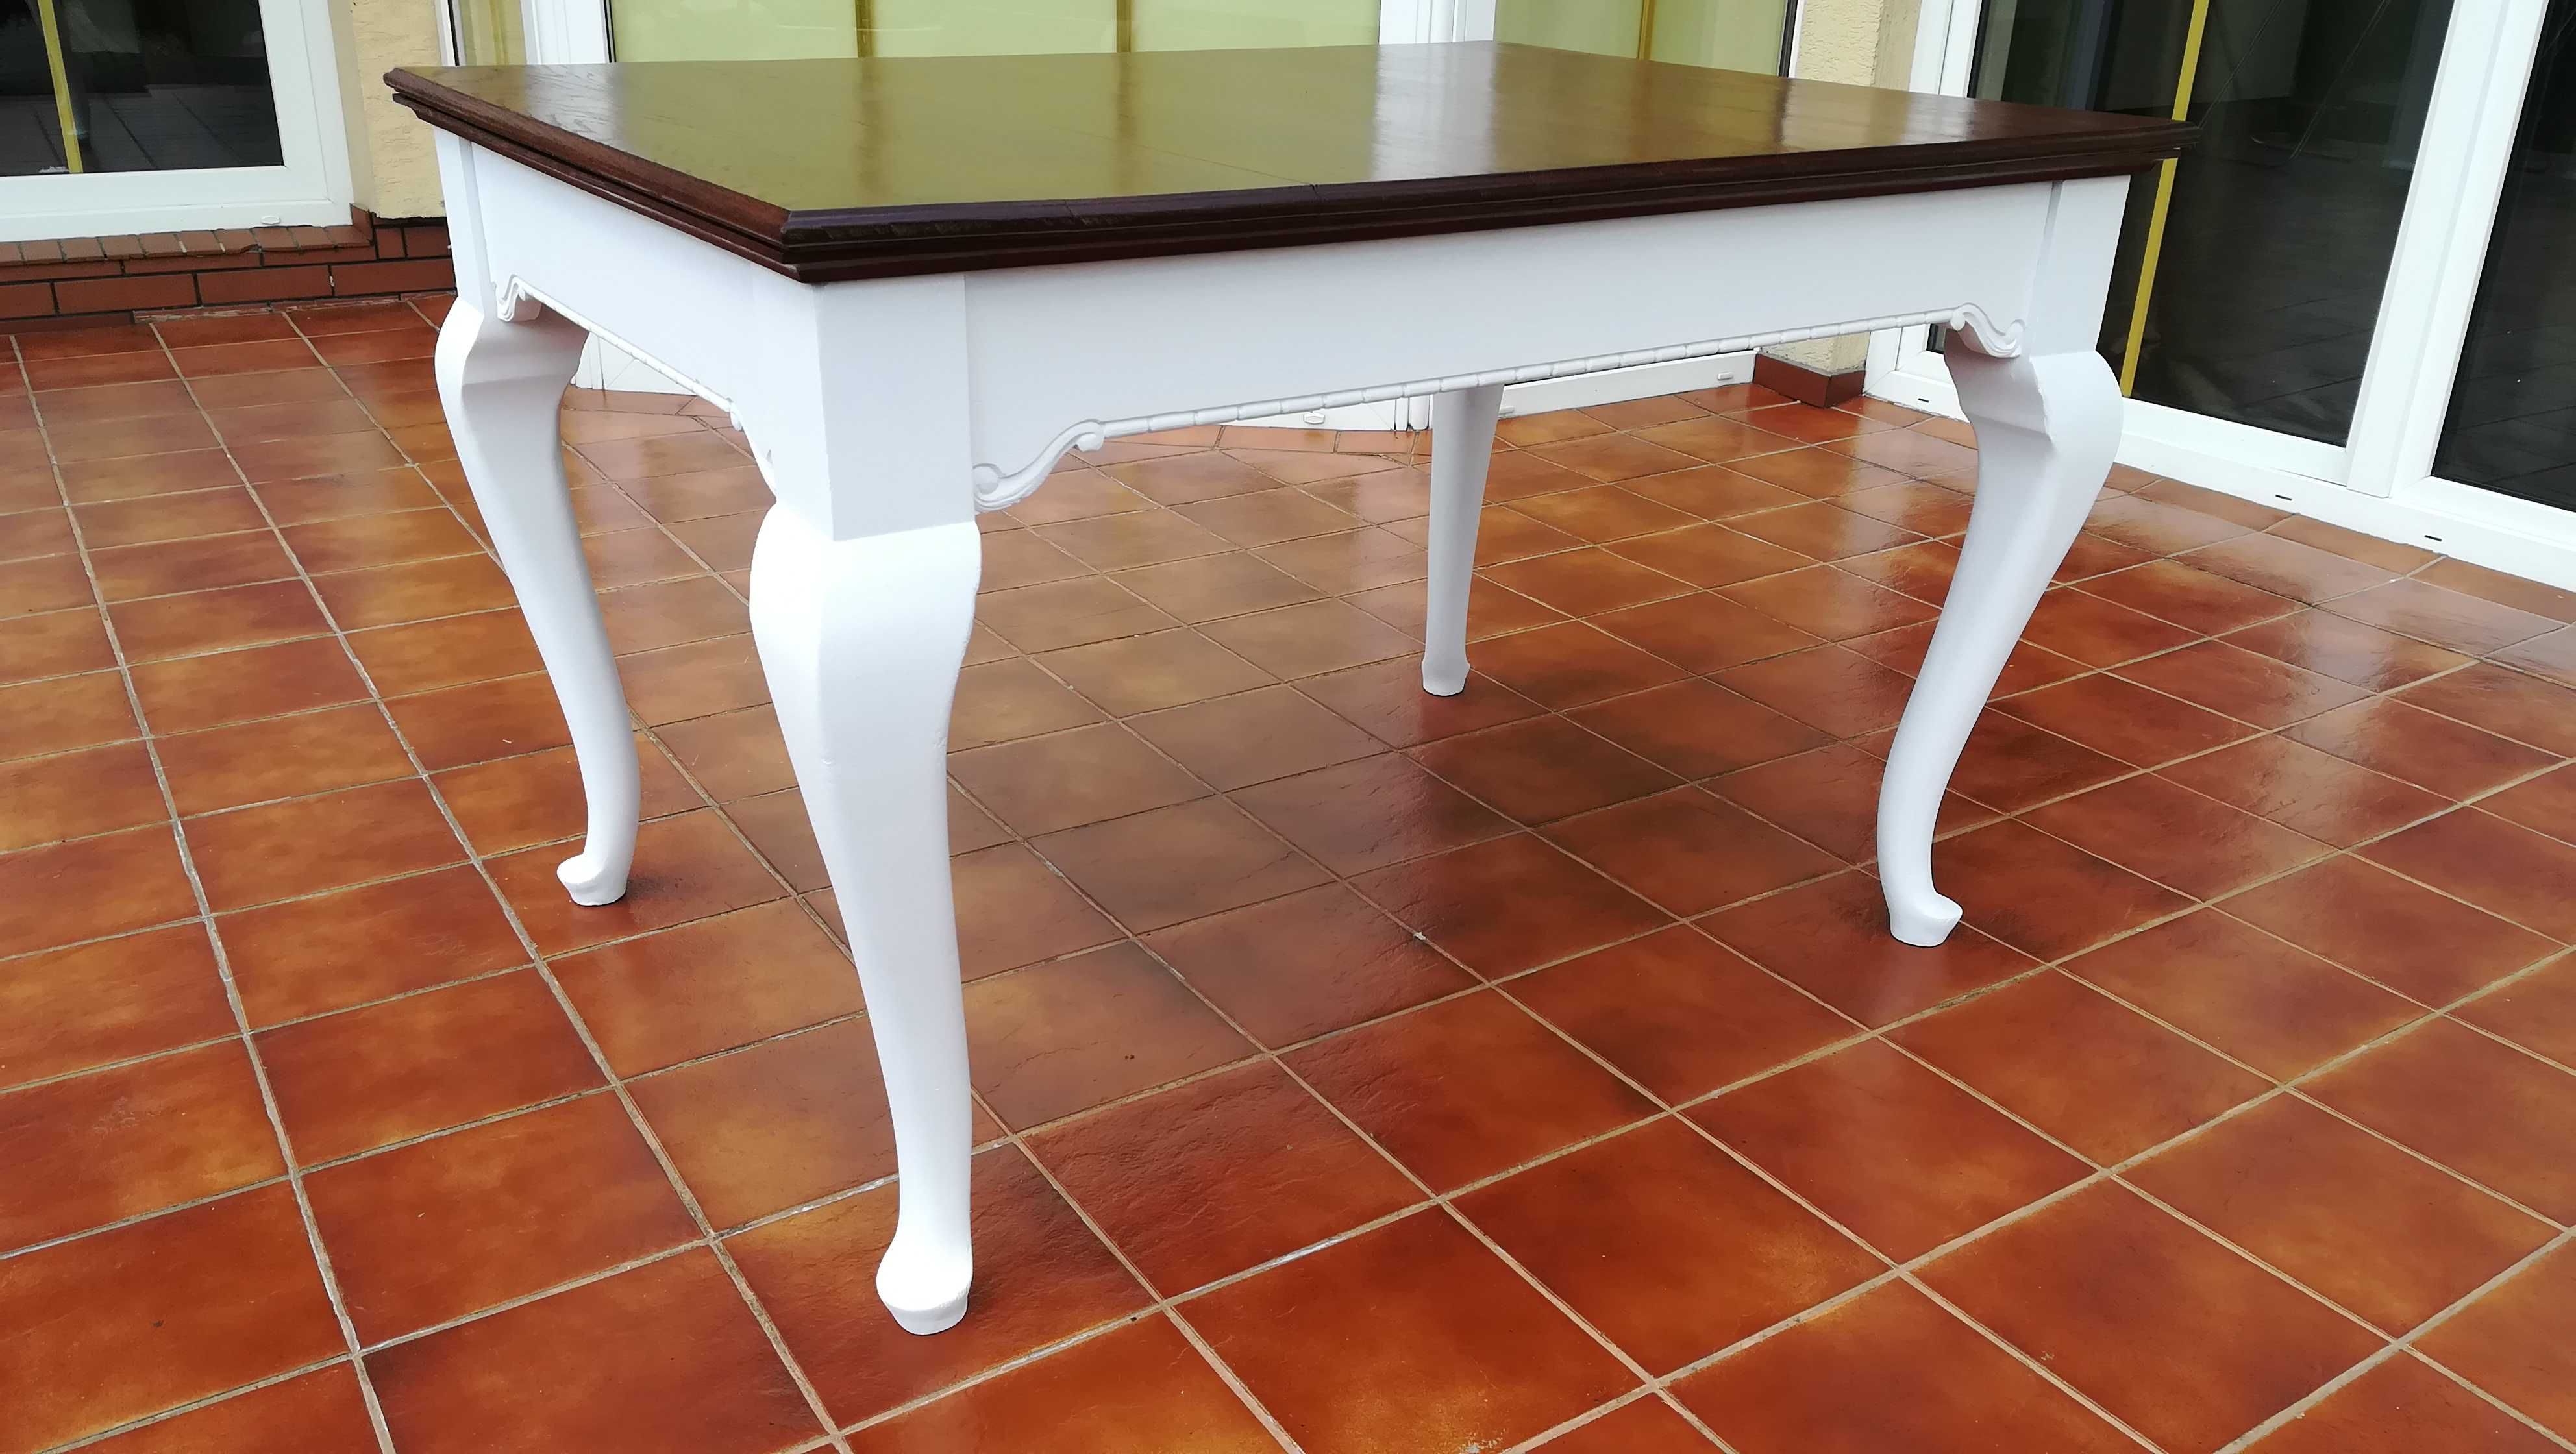 Stół drewniany prostokątny stylowy ludwik antyk  stolik okrągły ława